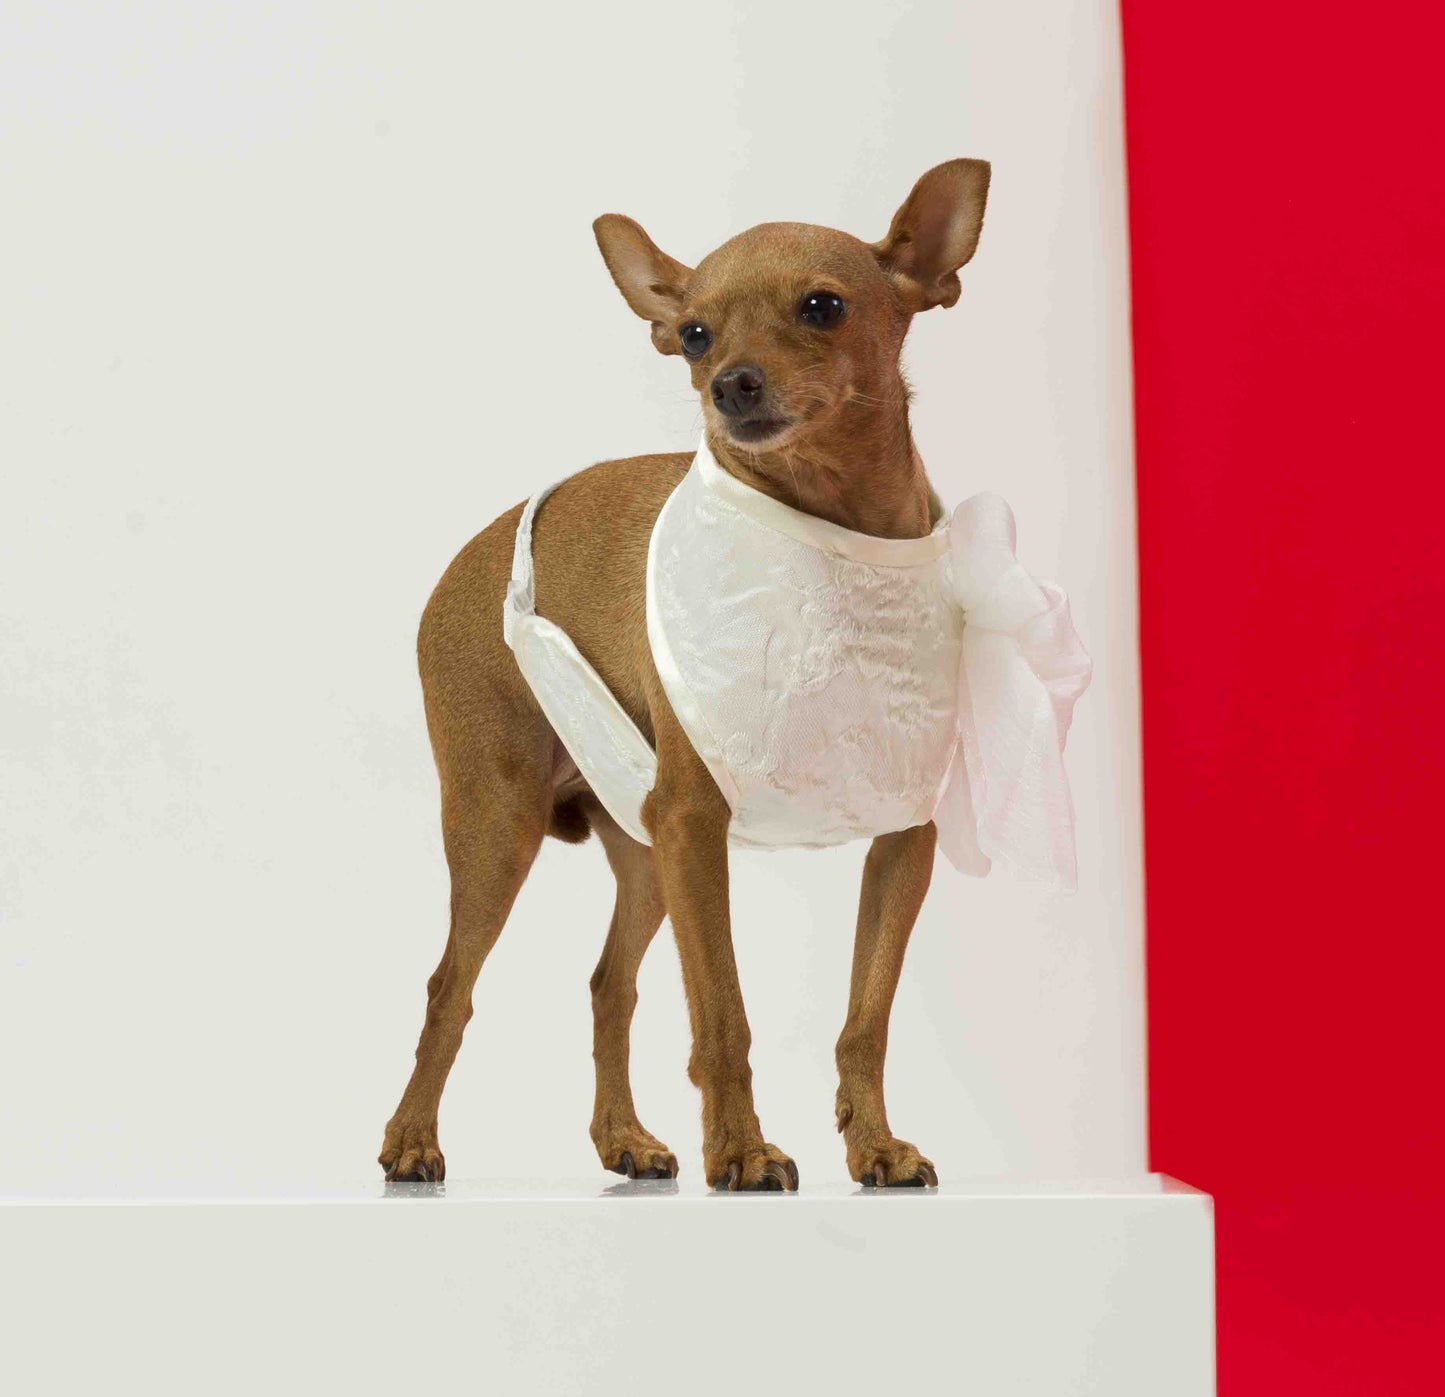 La pettorina luxury per cani eleganti è un accessorio di alta gamma che unisce stile e funzionalità per il tuo amico a quattro zampe. Questa pettorina è progettata per adattarsi perfettamente alla taglia e alla forma del tuo cane, offrendo un look sofisticato e un comfort ottimale.